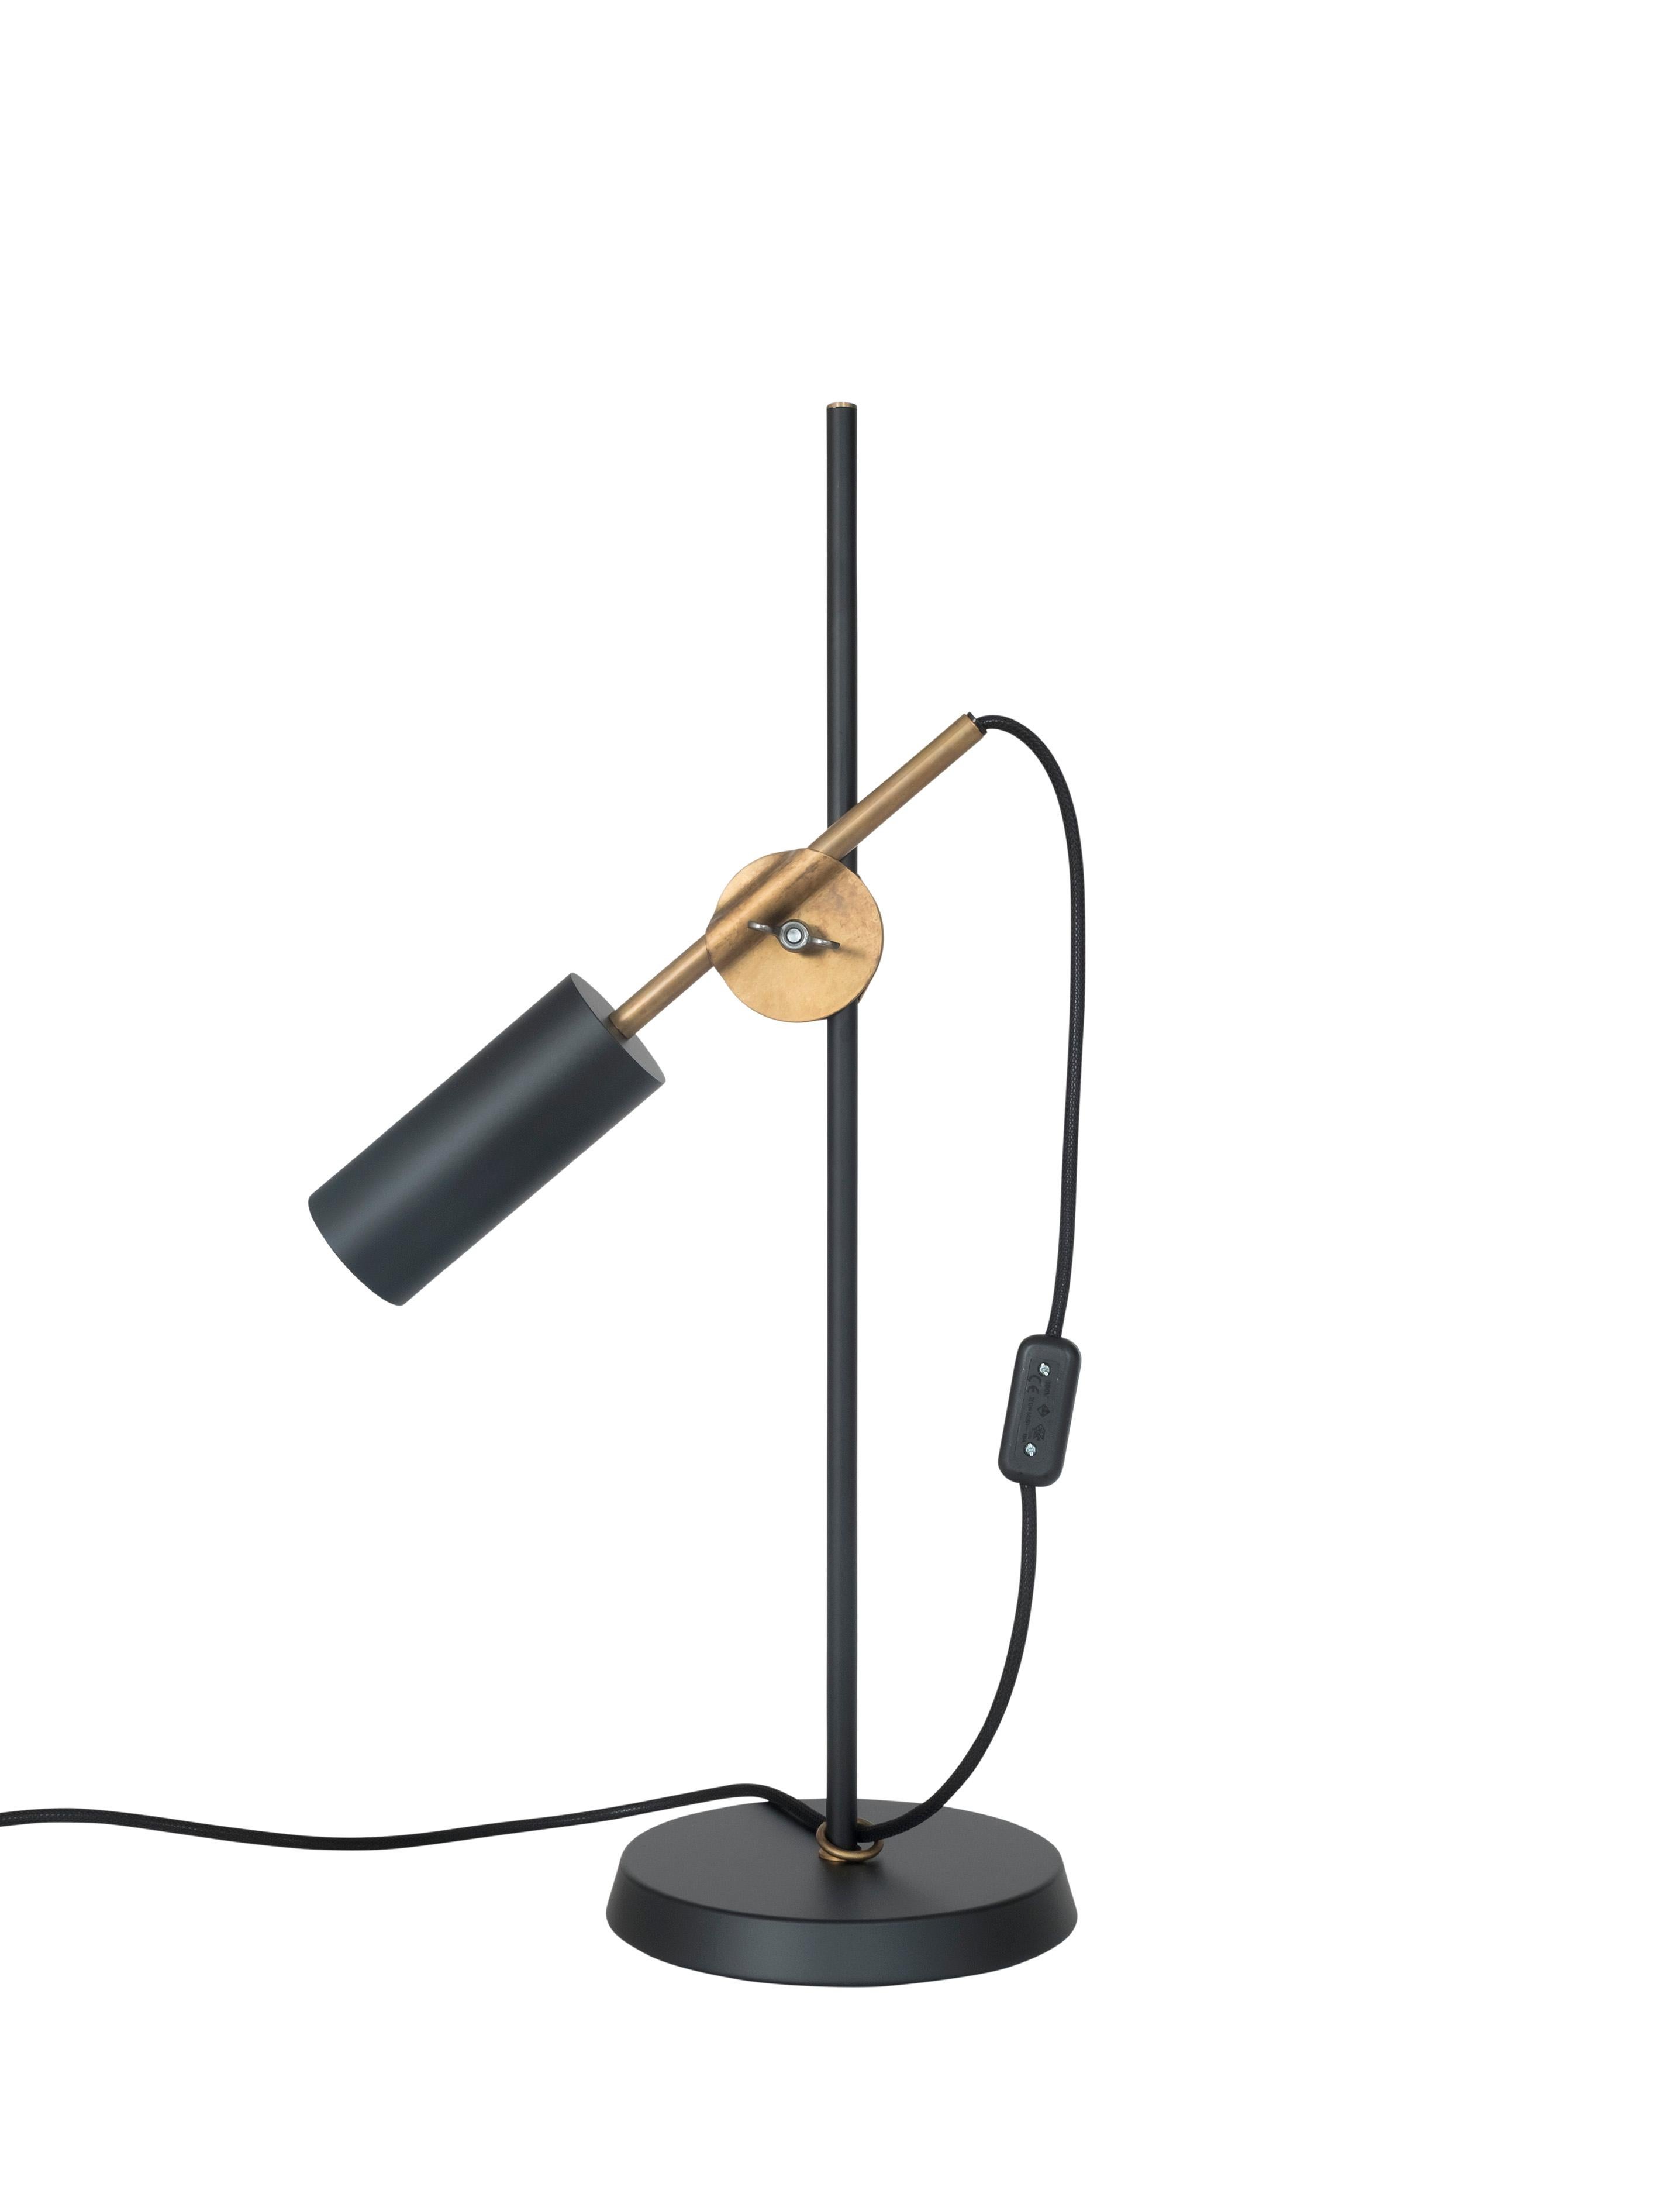 Contemporary Johan Carpner Stav Black Table Lamp by Konsthantverk For Sale